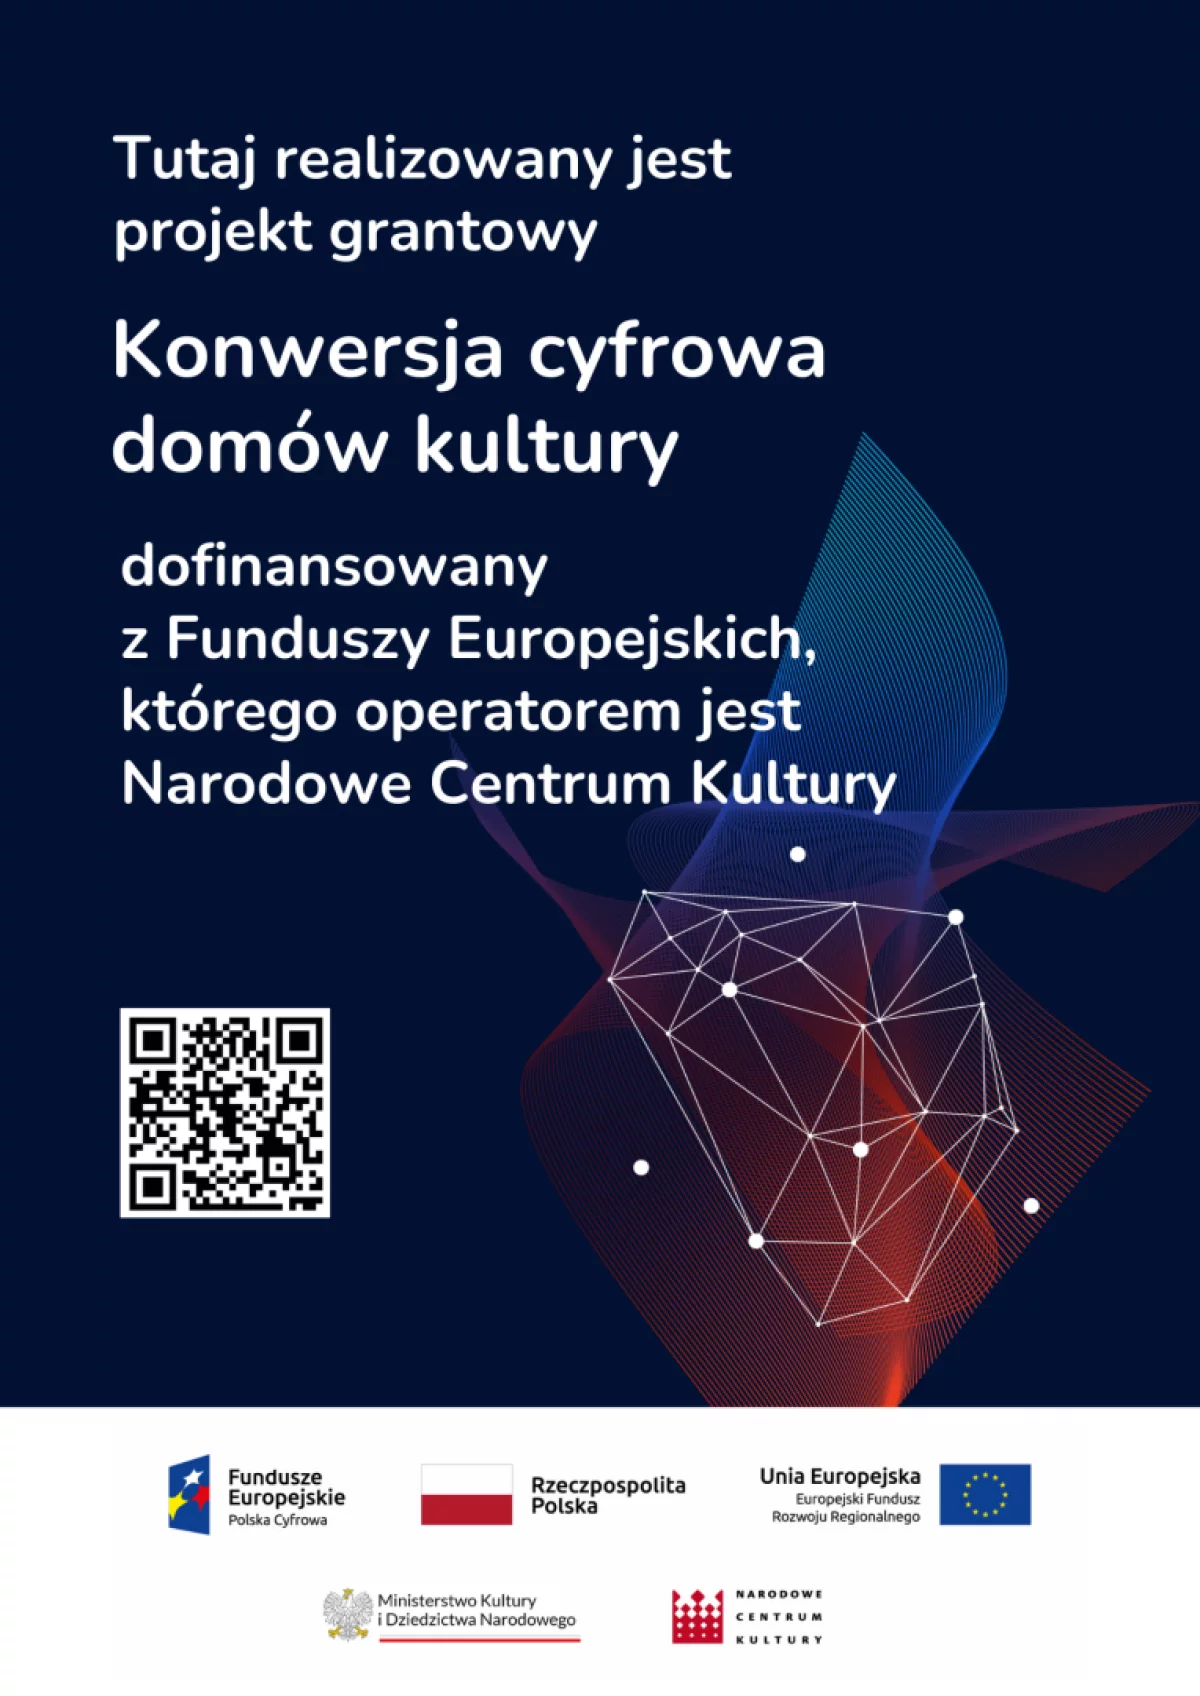 Konwersja Cyfrowa Domów Kultury - dodatkowe środki dla LDK